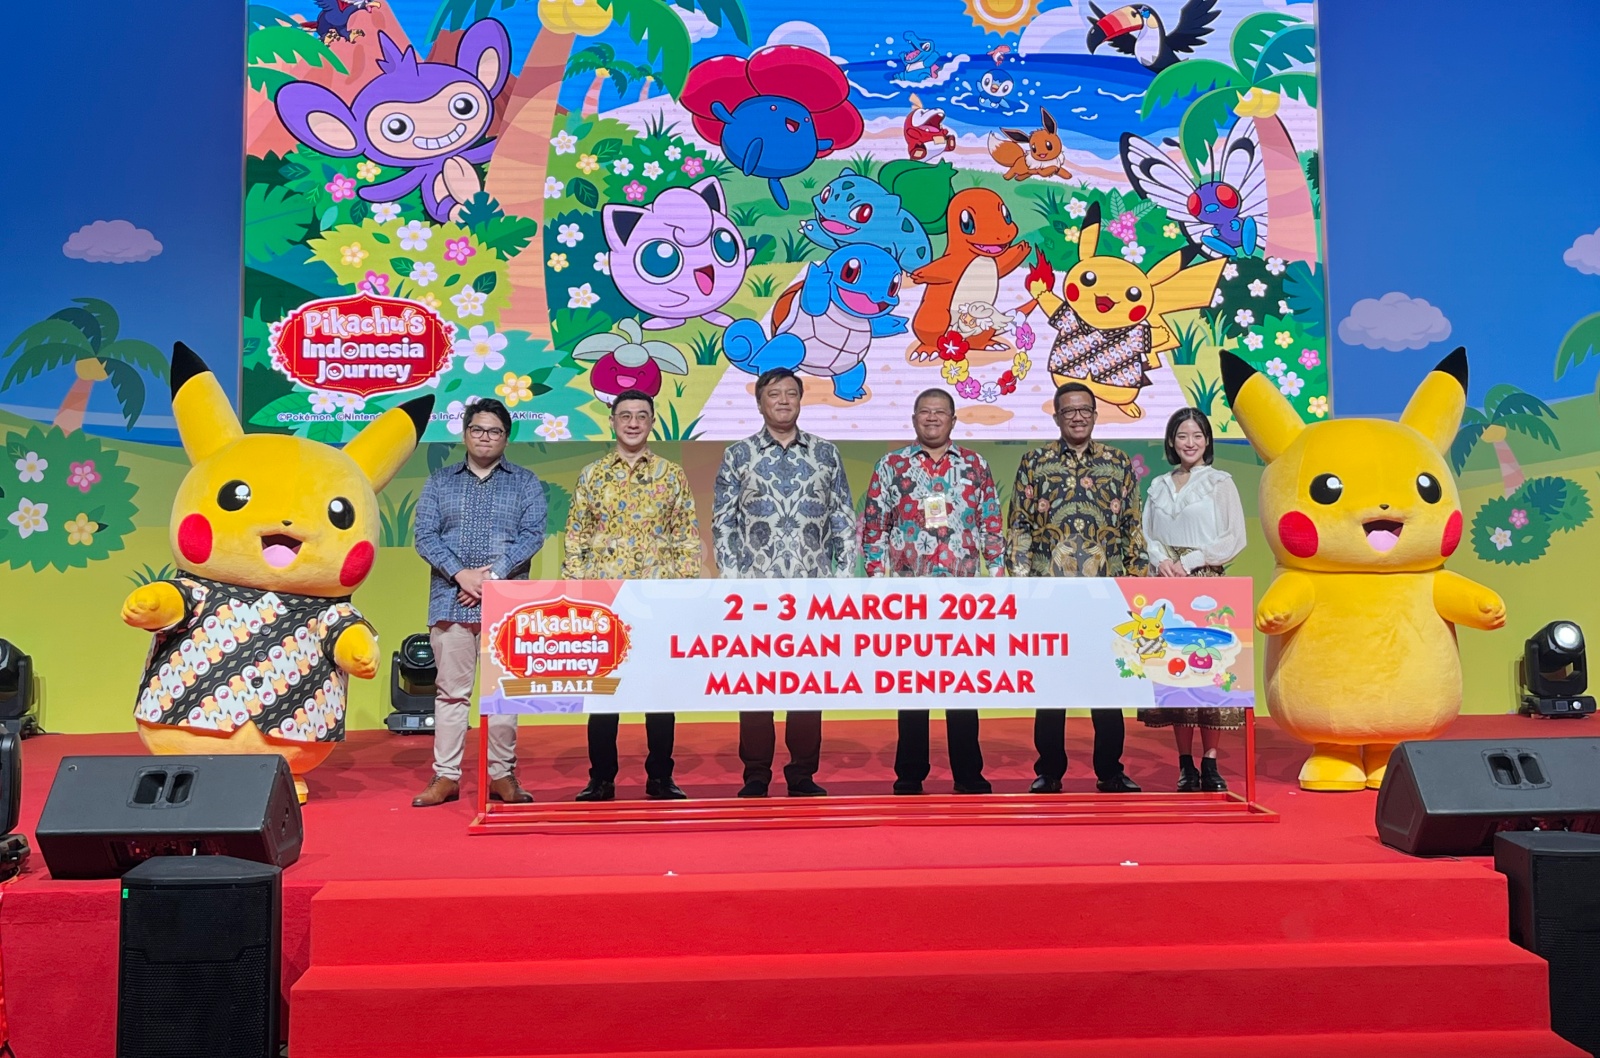 Pikachu Berkemeja Batik Bakal Sapa Bali 2-3 Maret 2024